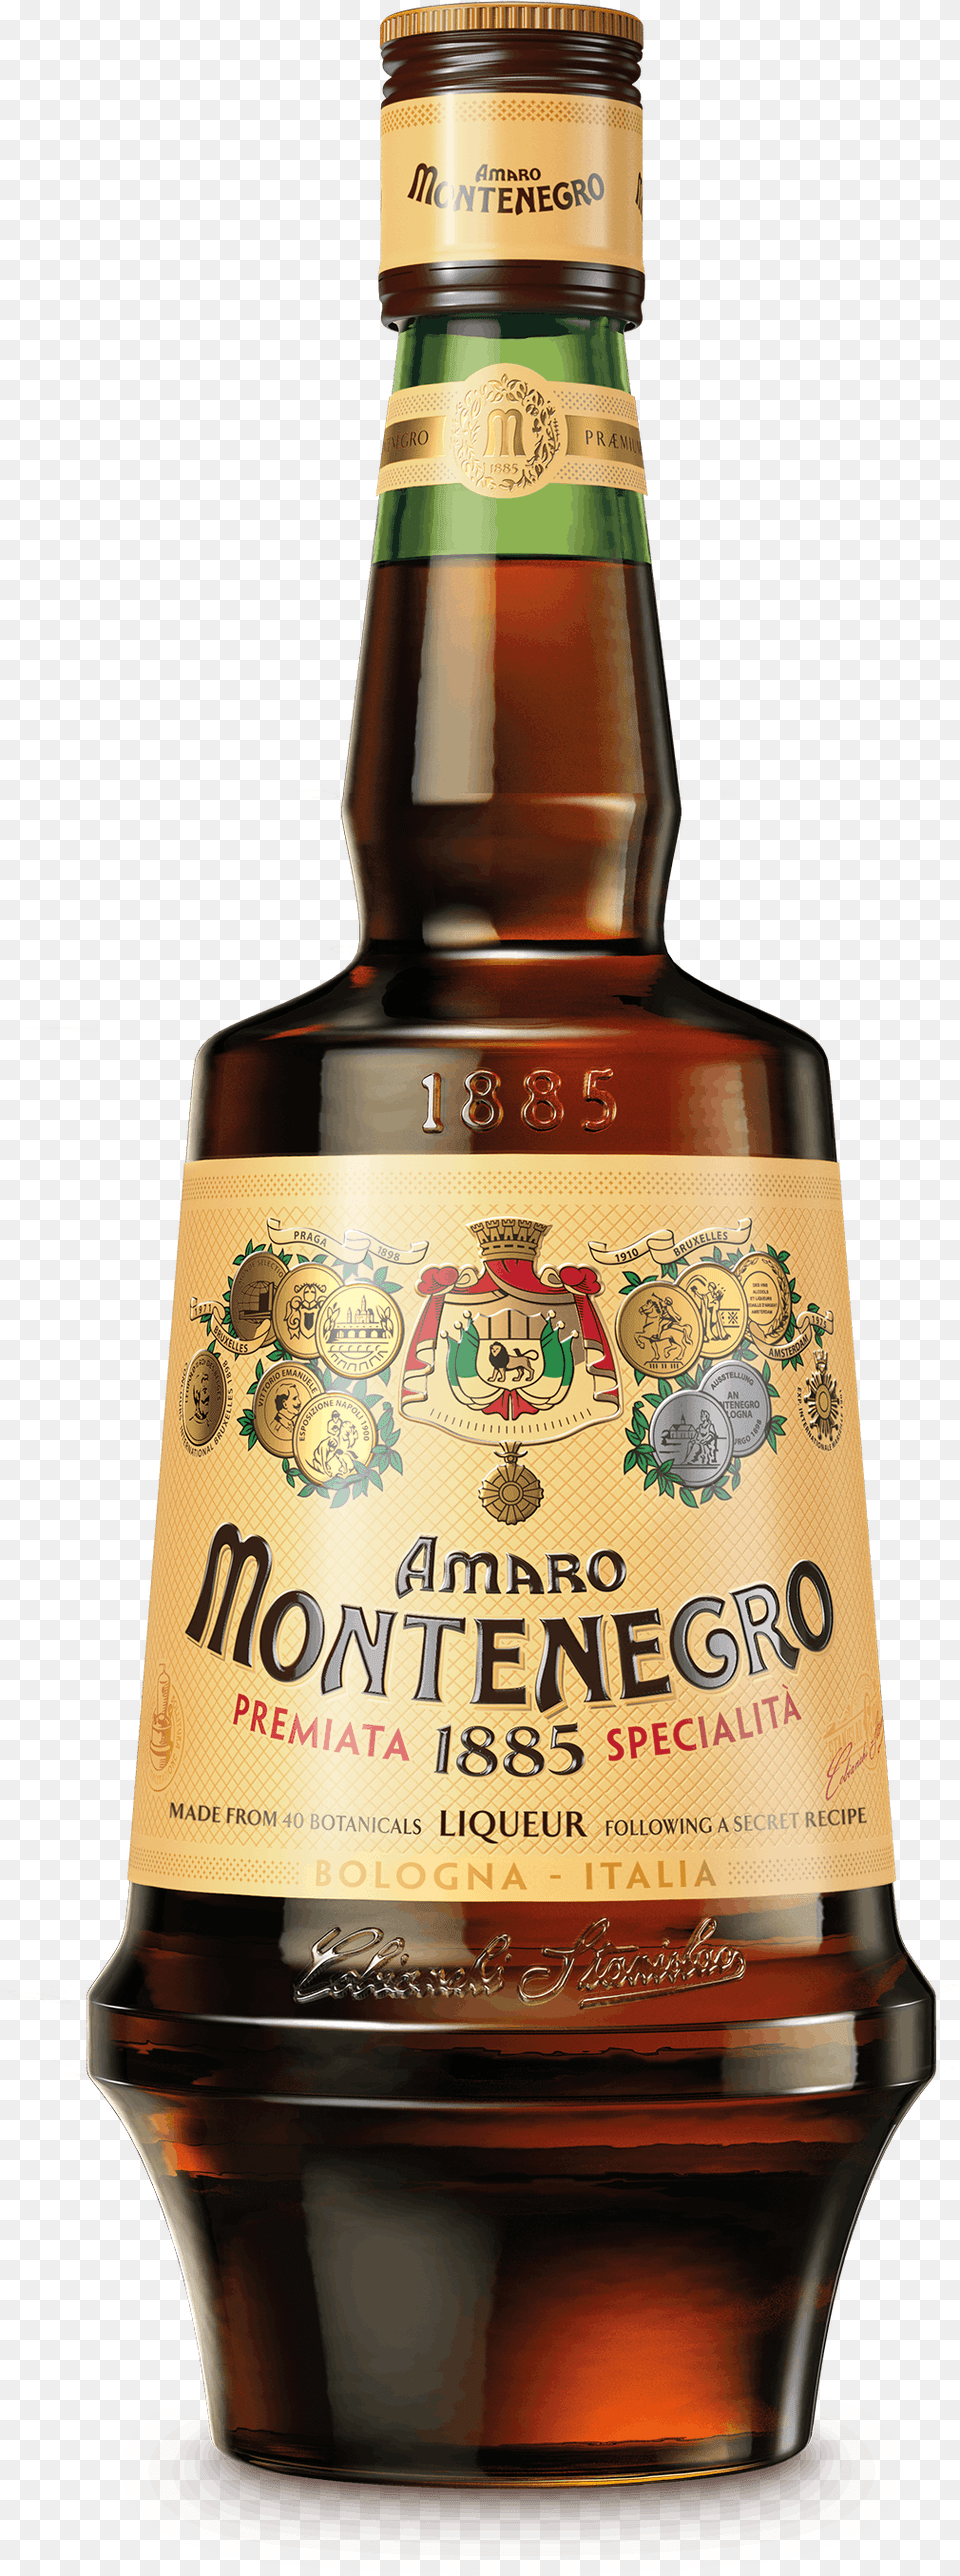 Montenegro Amaro Italiano Liqueur Montenegro Amaro, Alcohol, Beer, Beverage, Liquor Free Transparent Png